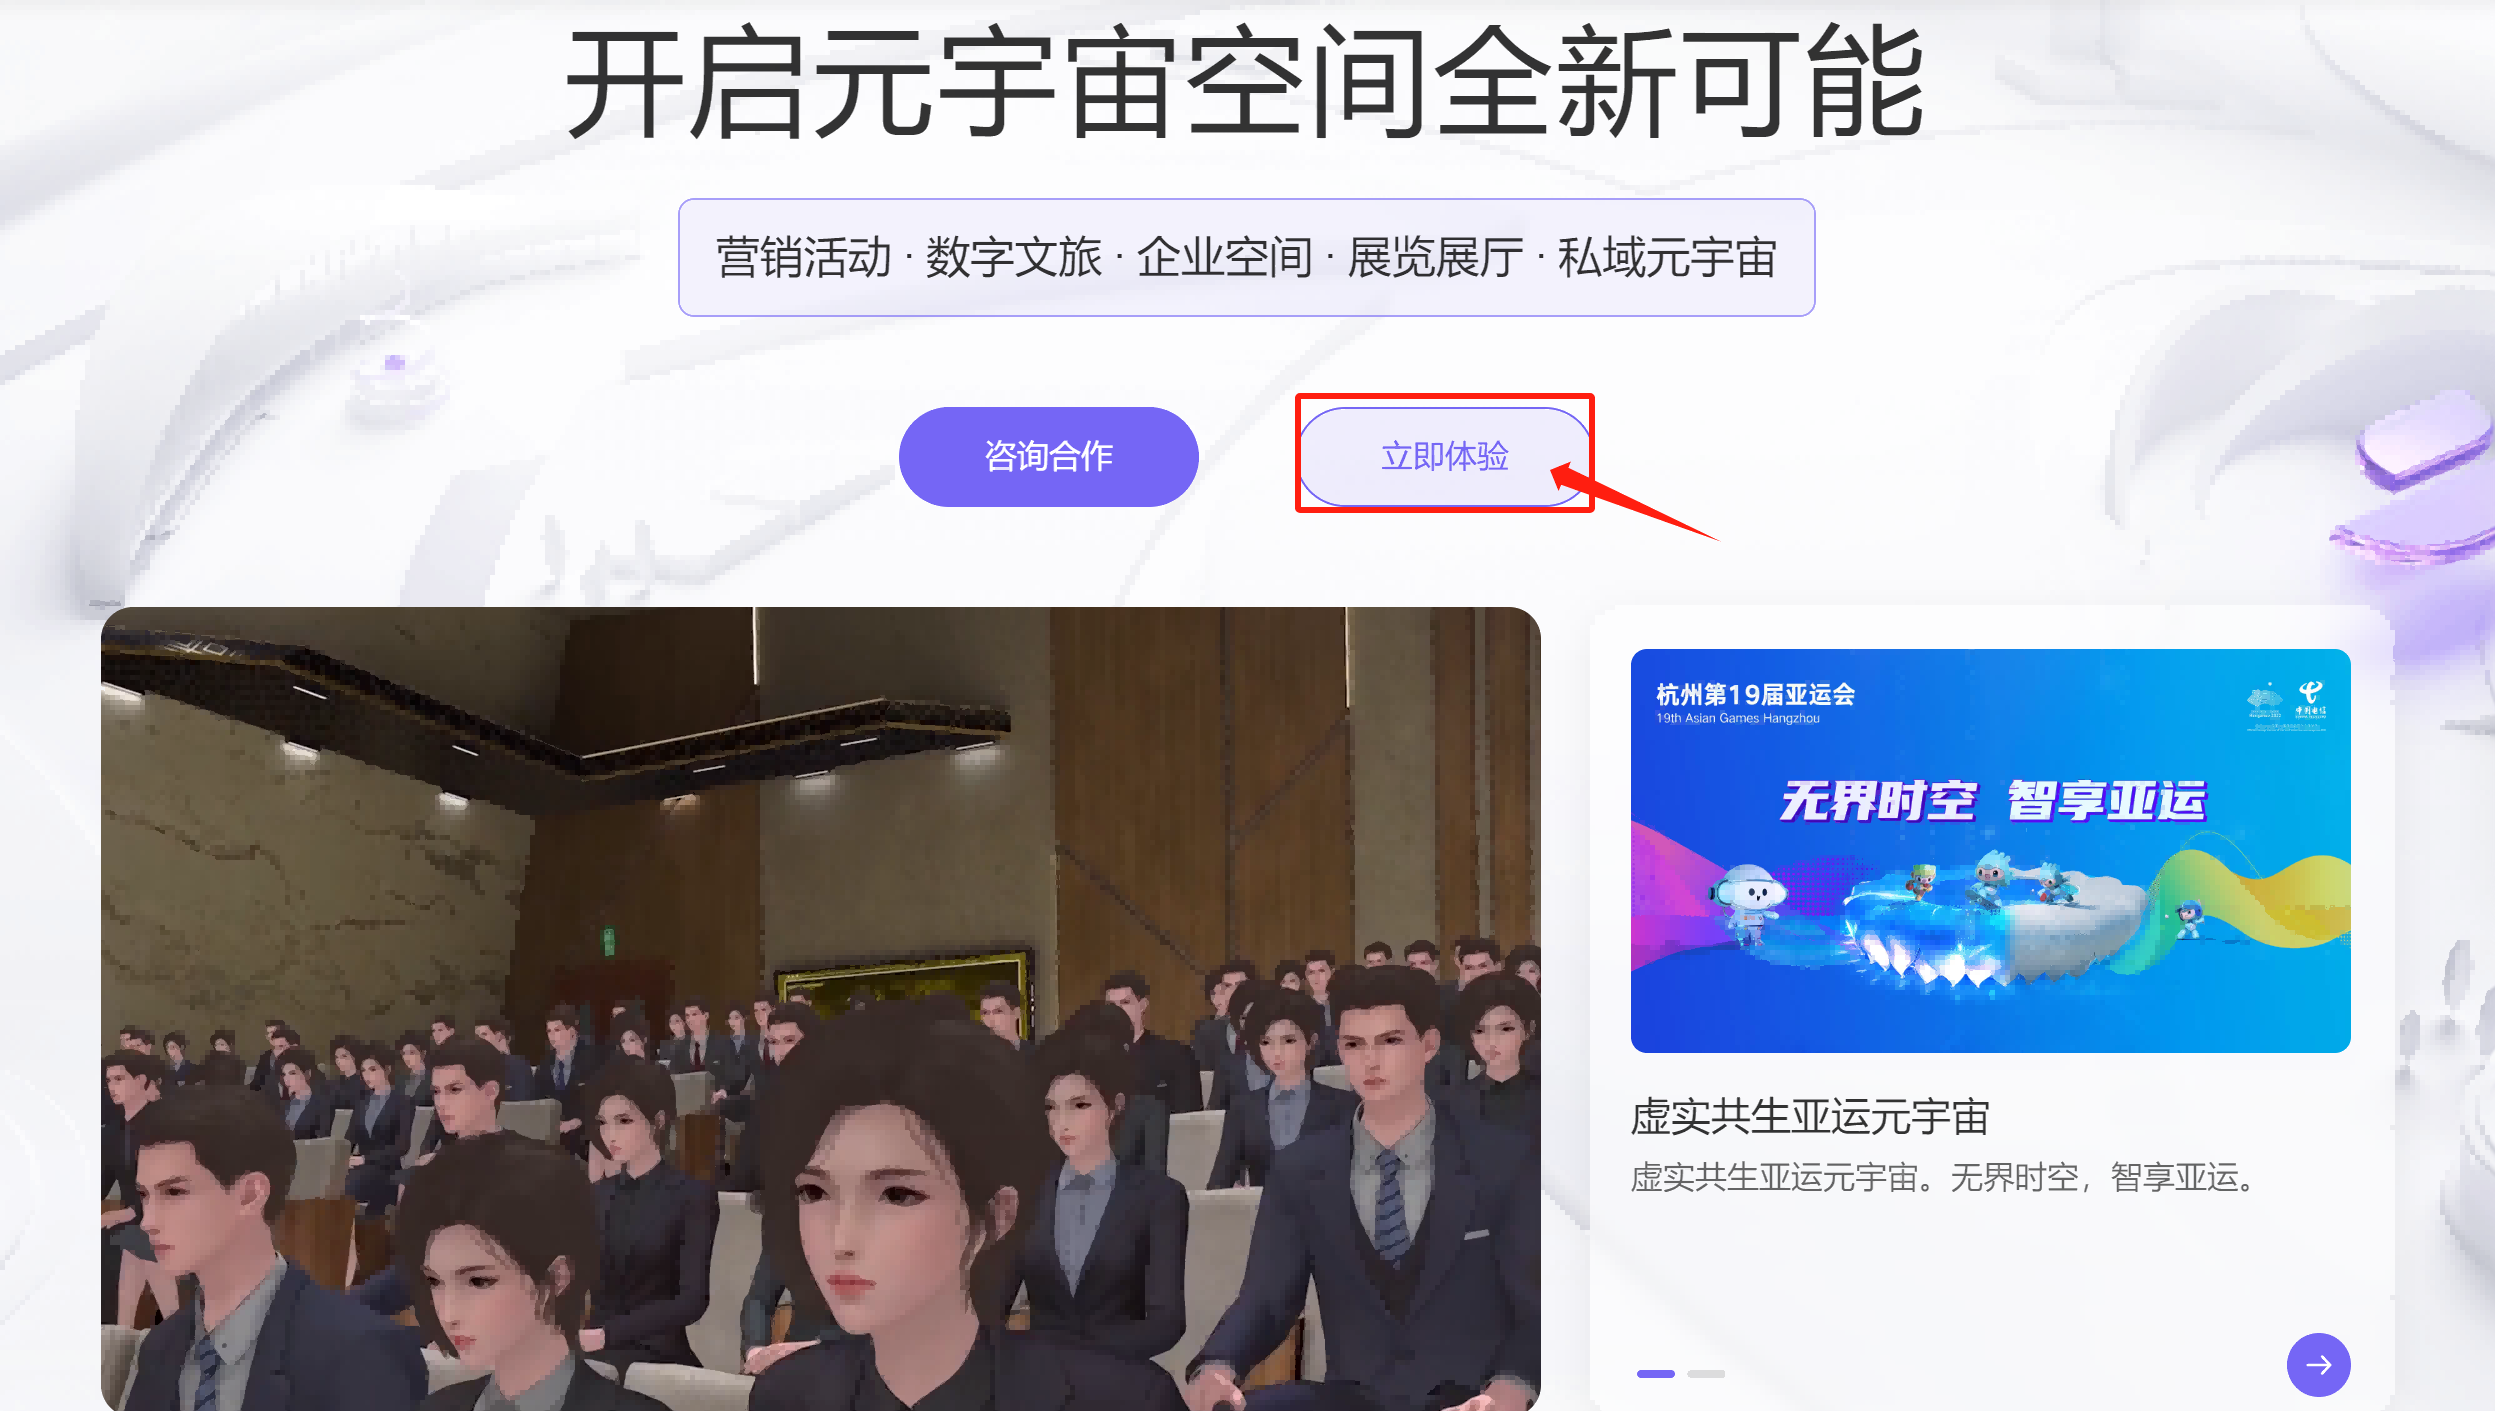 图片展示了一个虚拟会议界面，众多三维生成的虚拟人物坐在会场内，界面上方有中文提示和按钮。